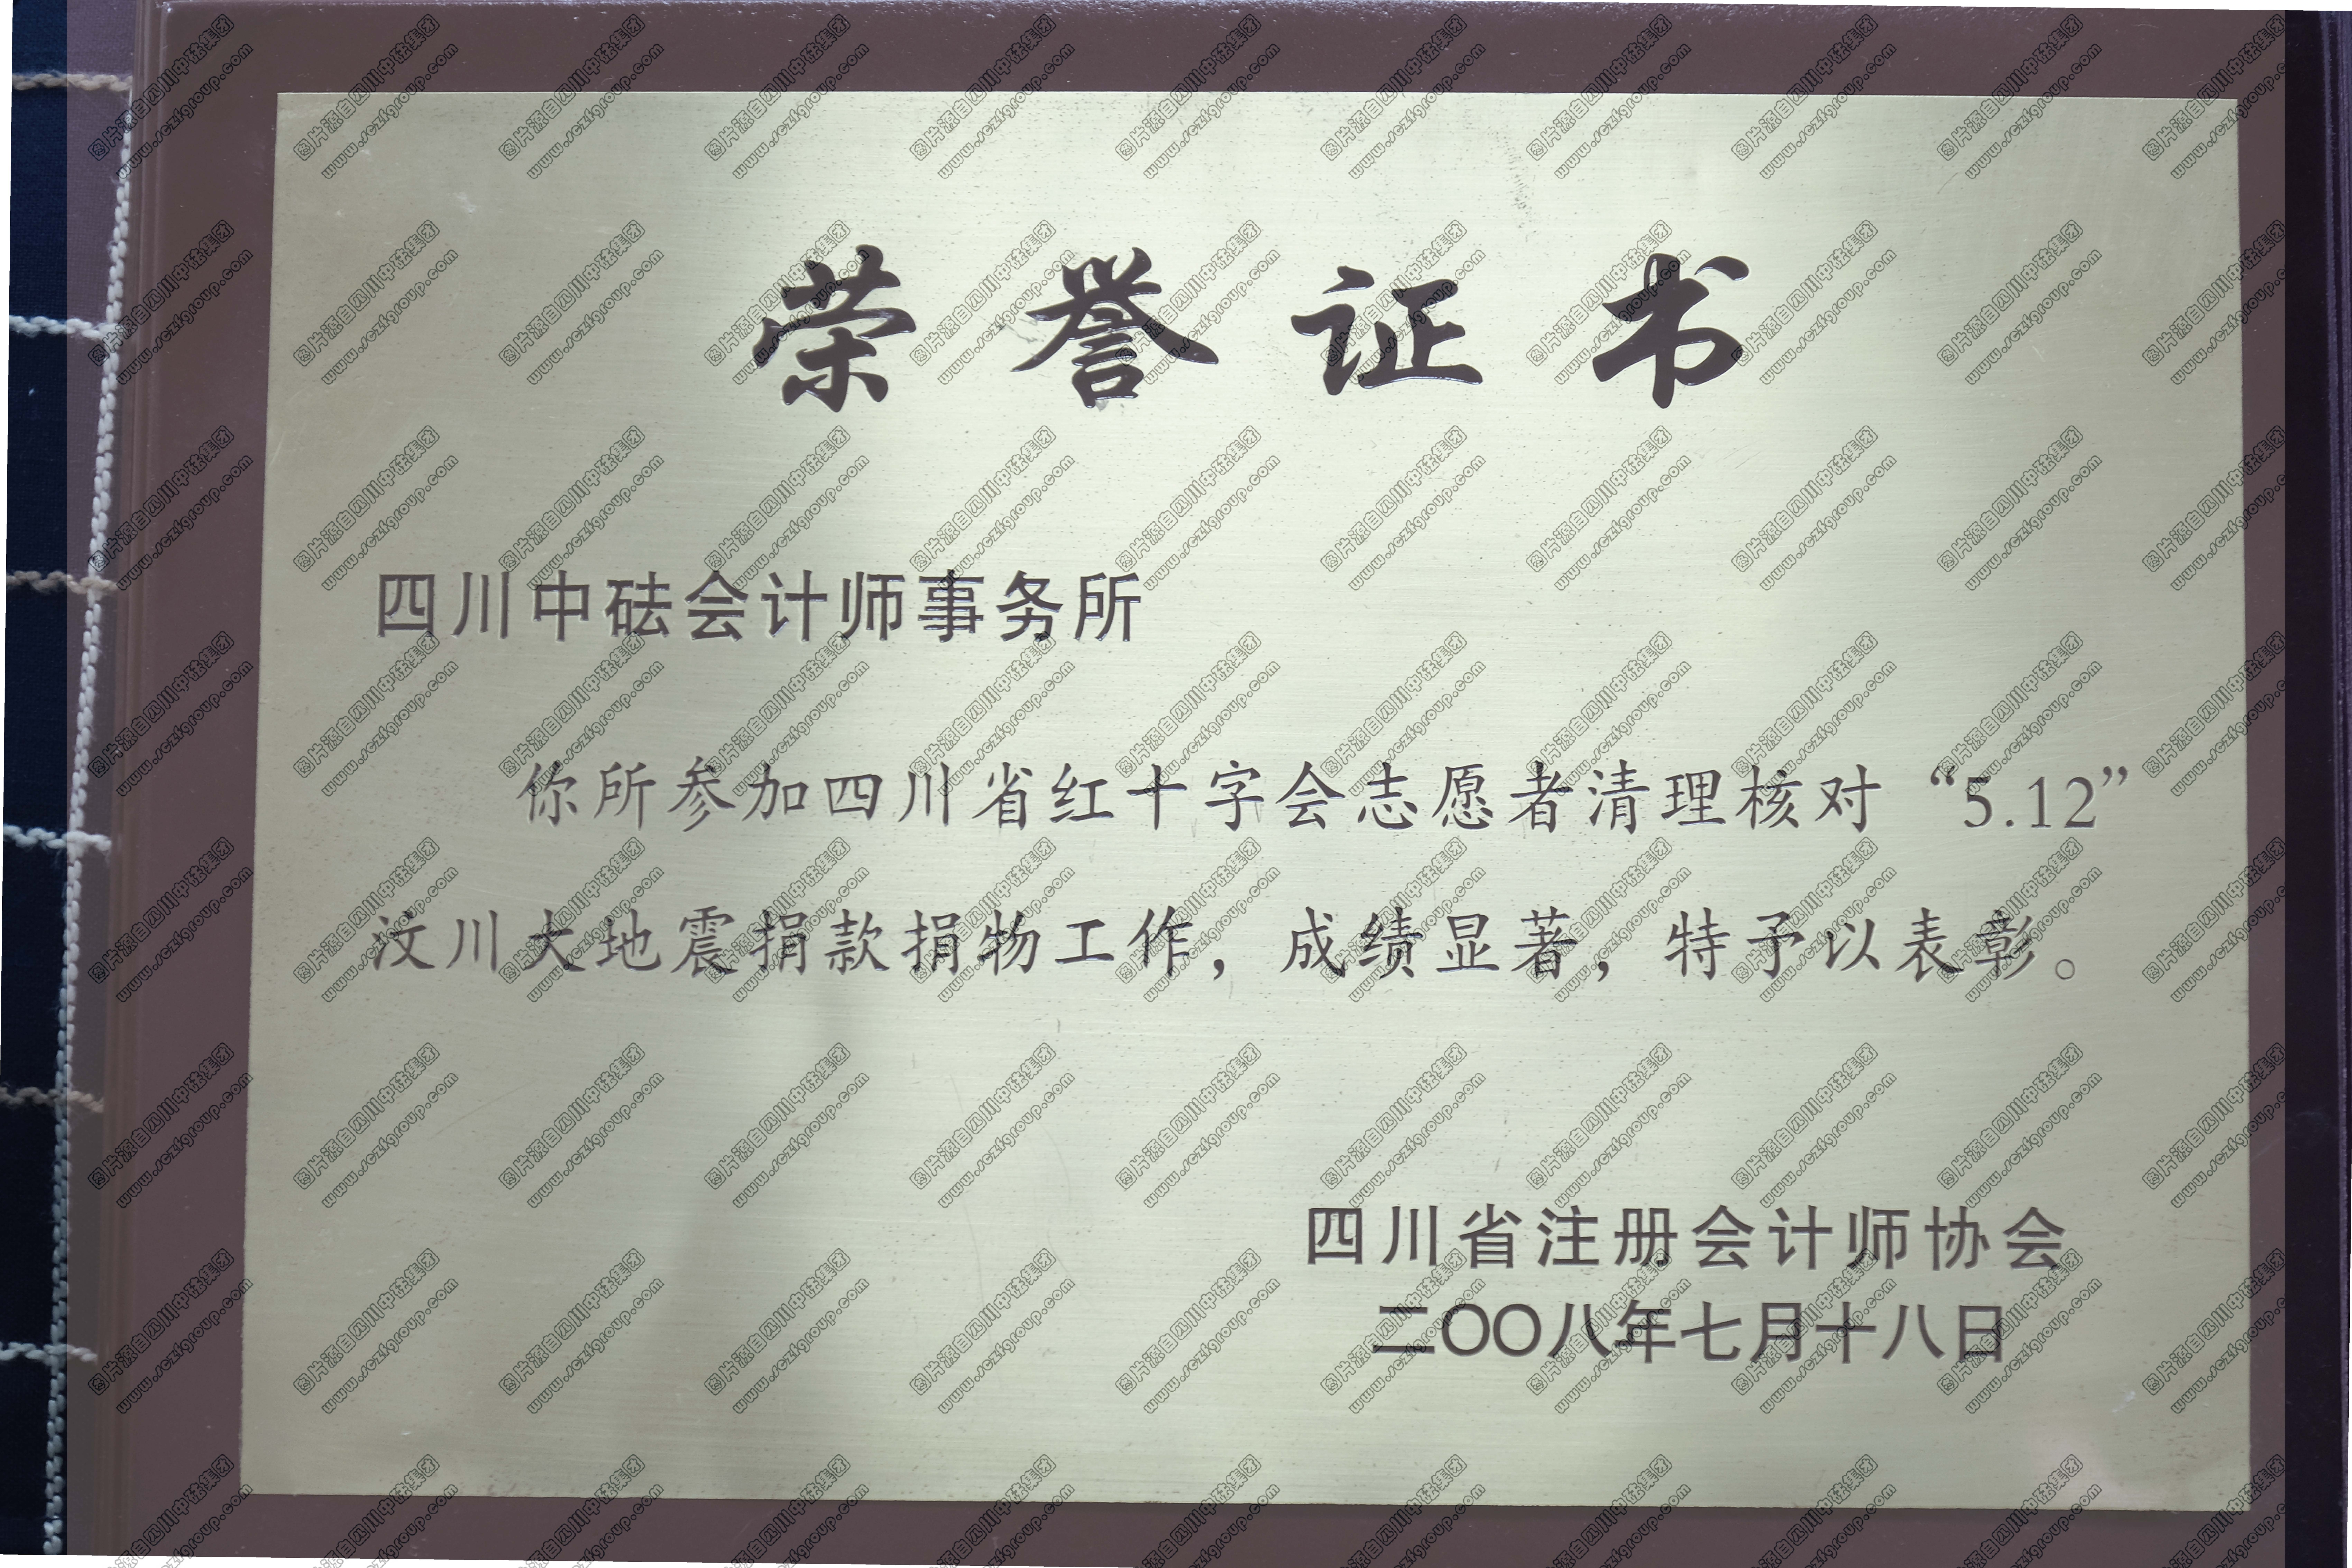 省注协-四川省红十字会志愿者清理核对“5.12”汶川大地震捐款捐物荣誉证书